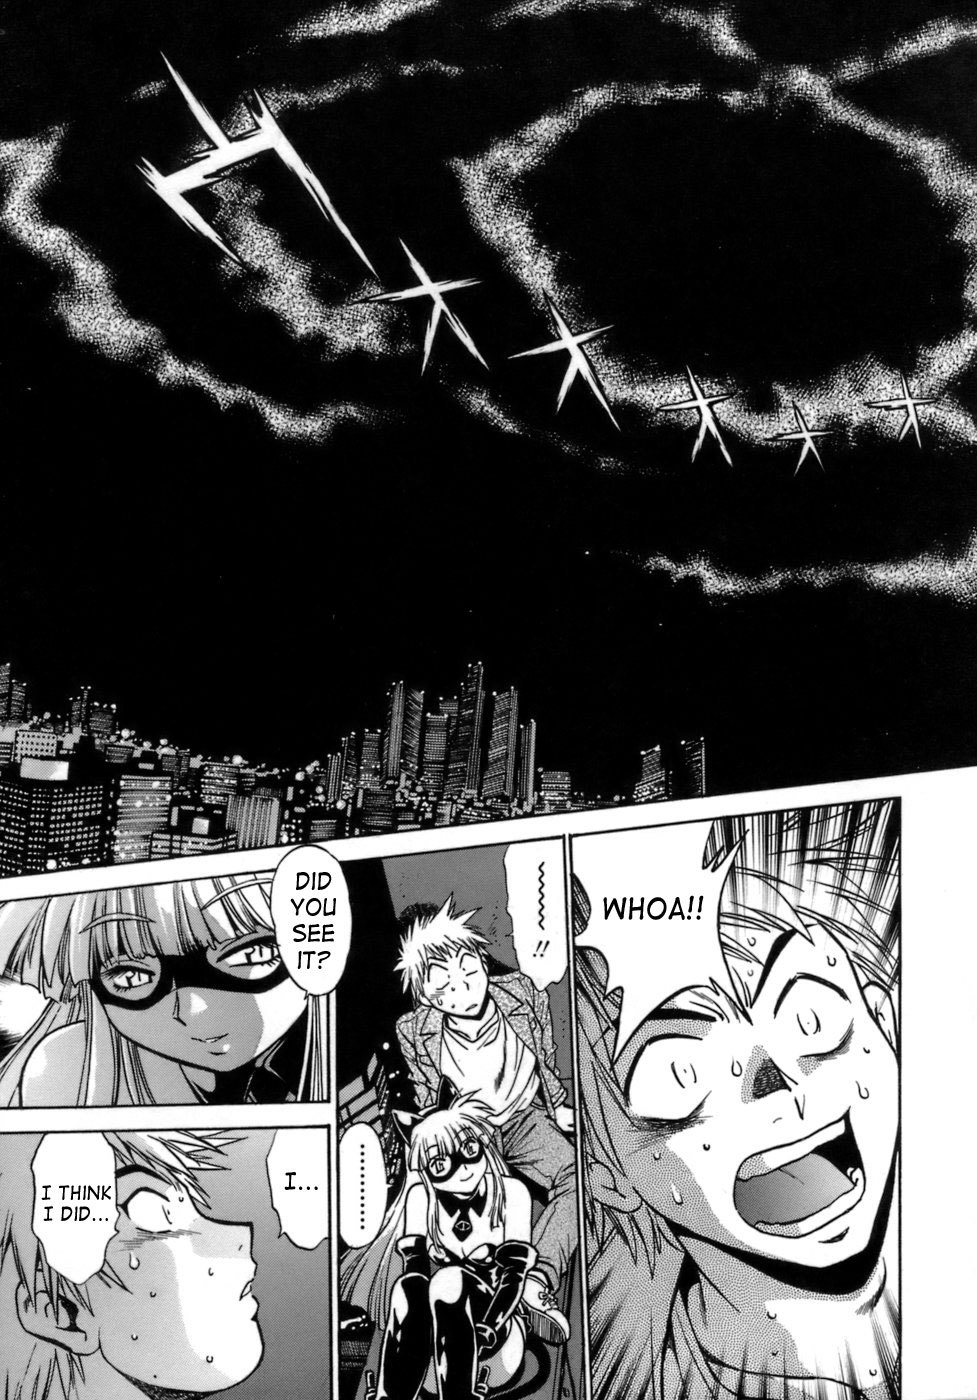 Tail Chaser Vol.1 37 hentai manga